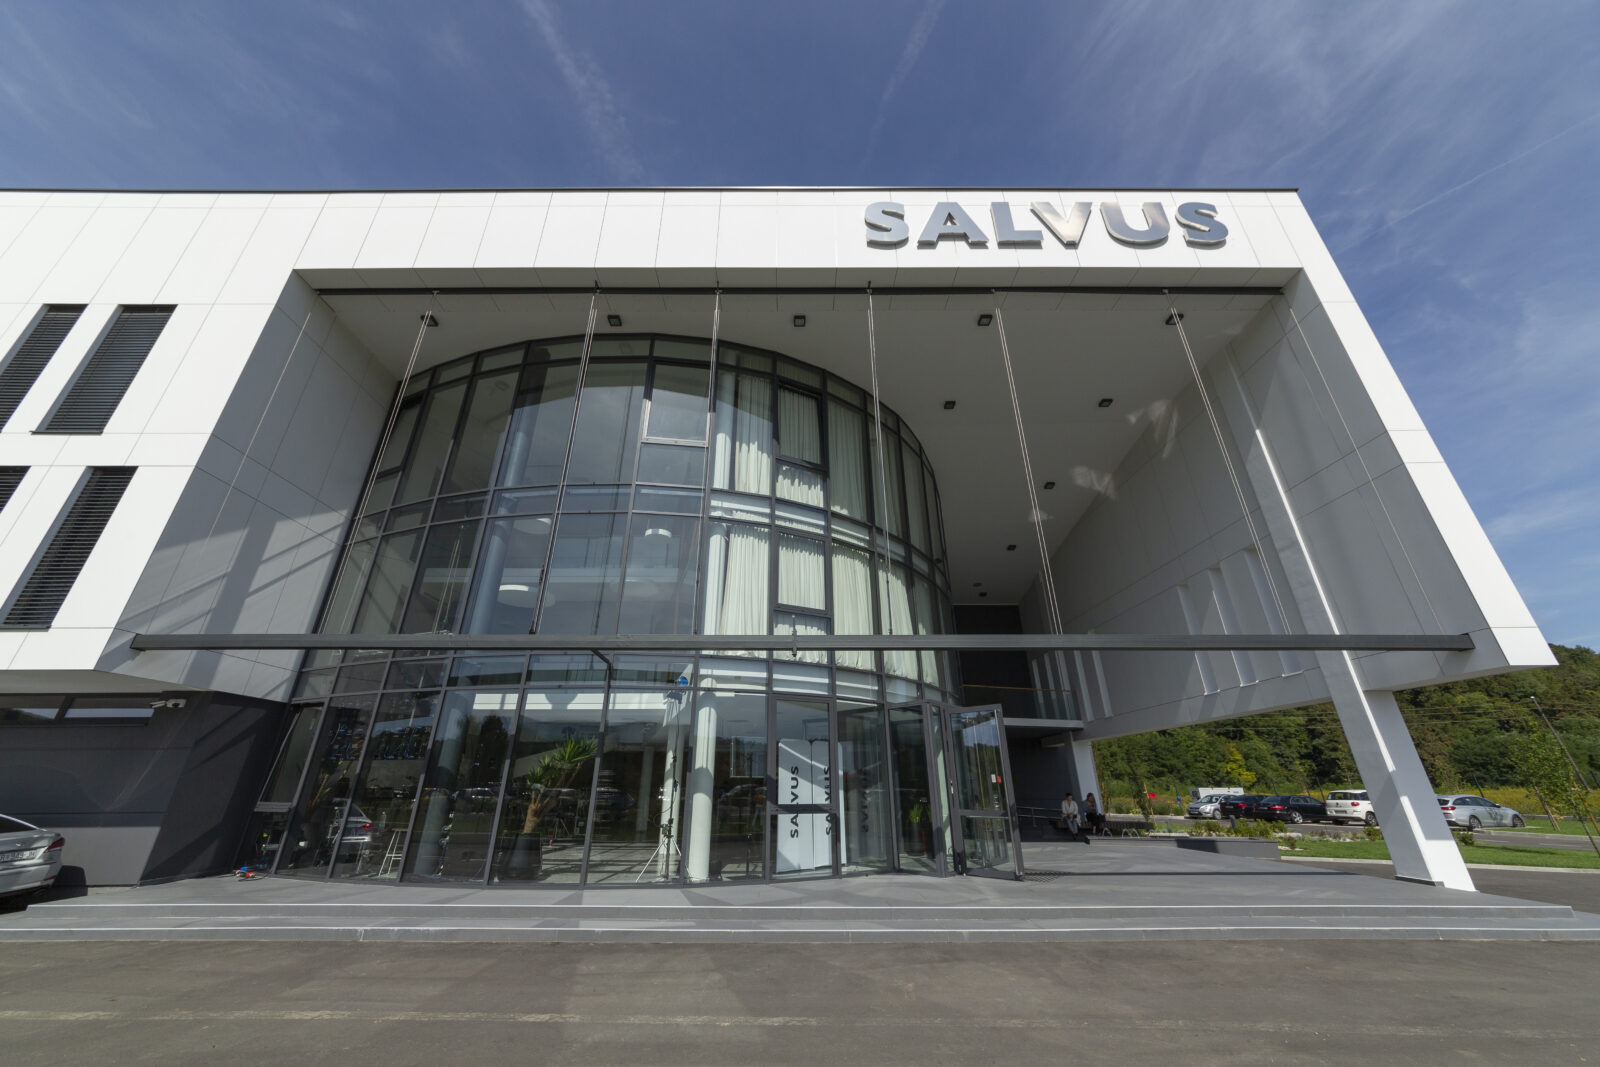 Nova zgrada tvrtke Salvus. Foto: Jelena Mihelčić